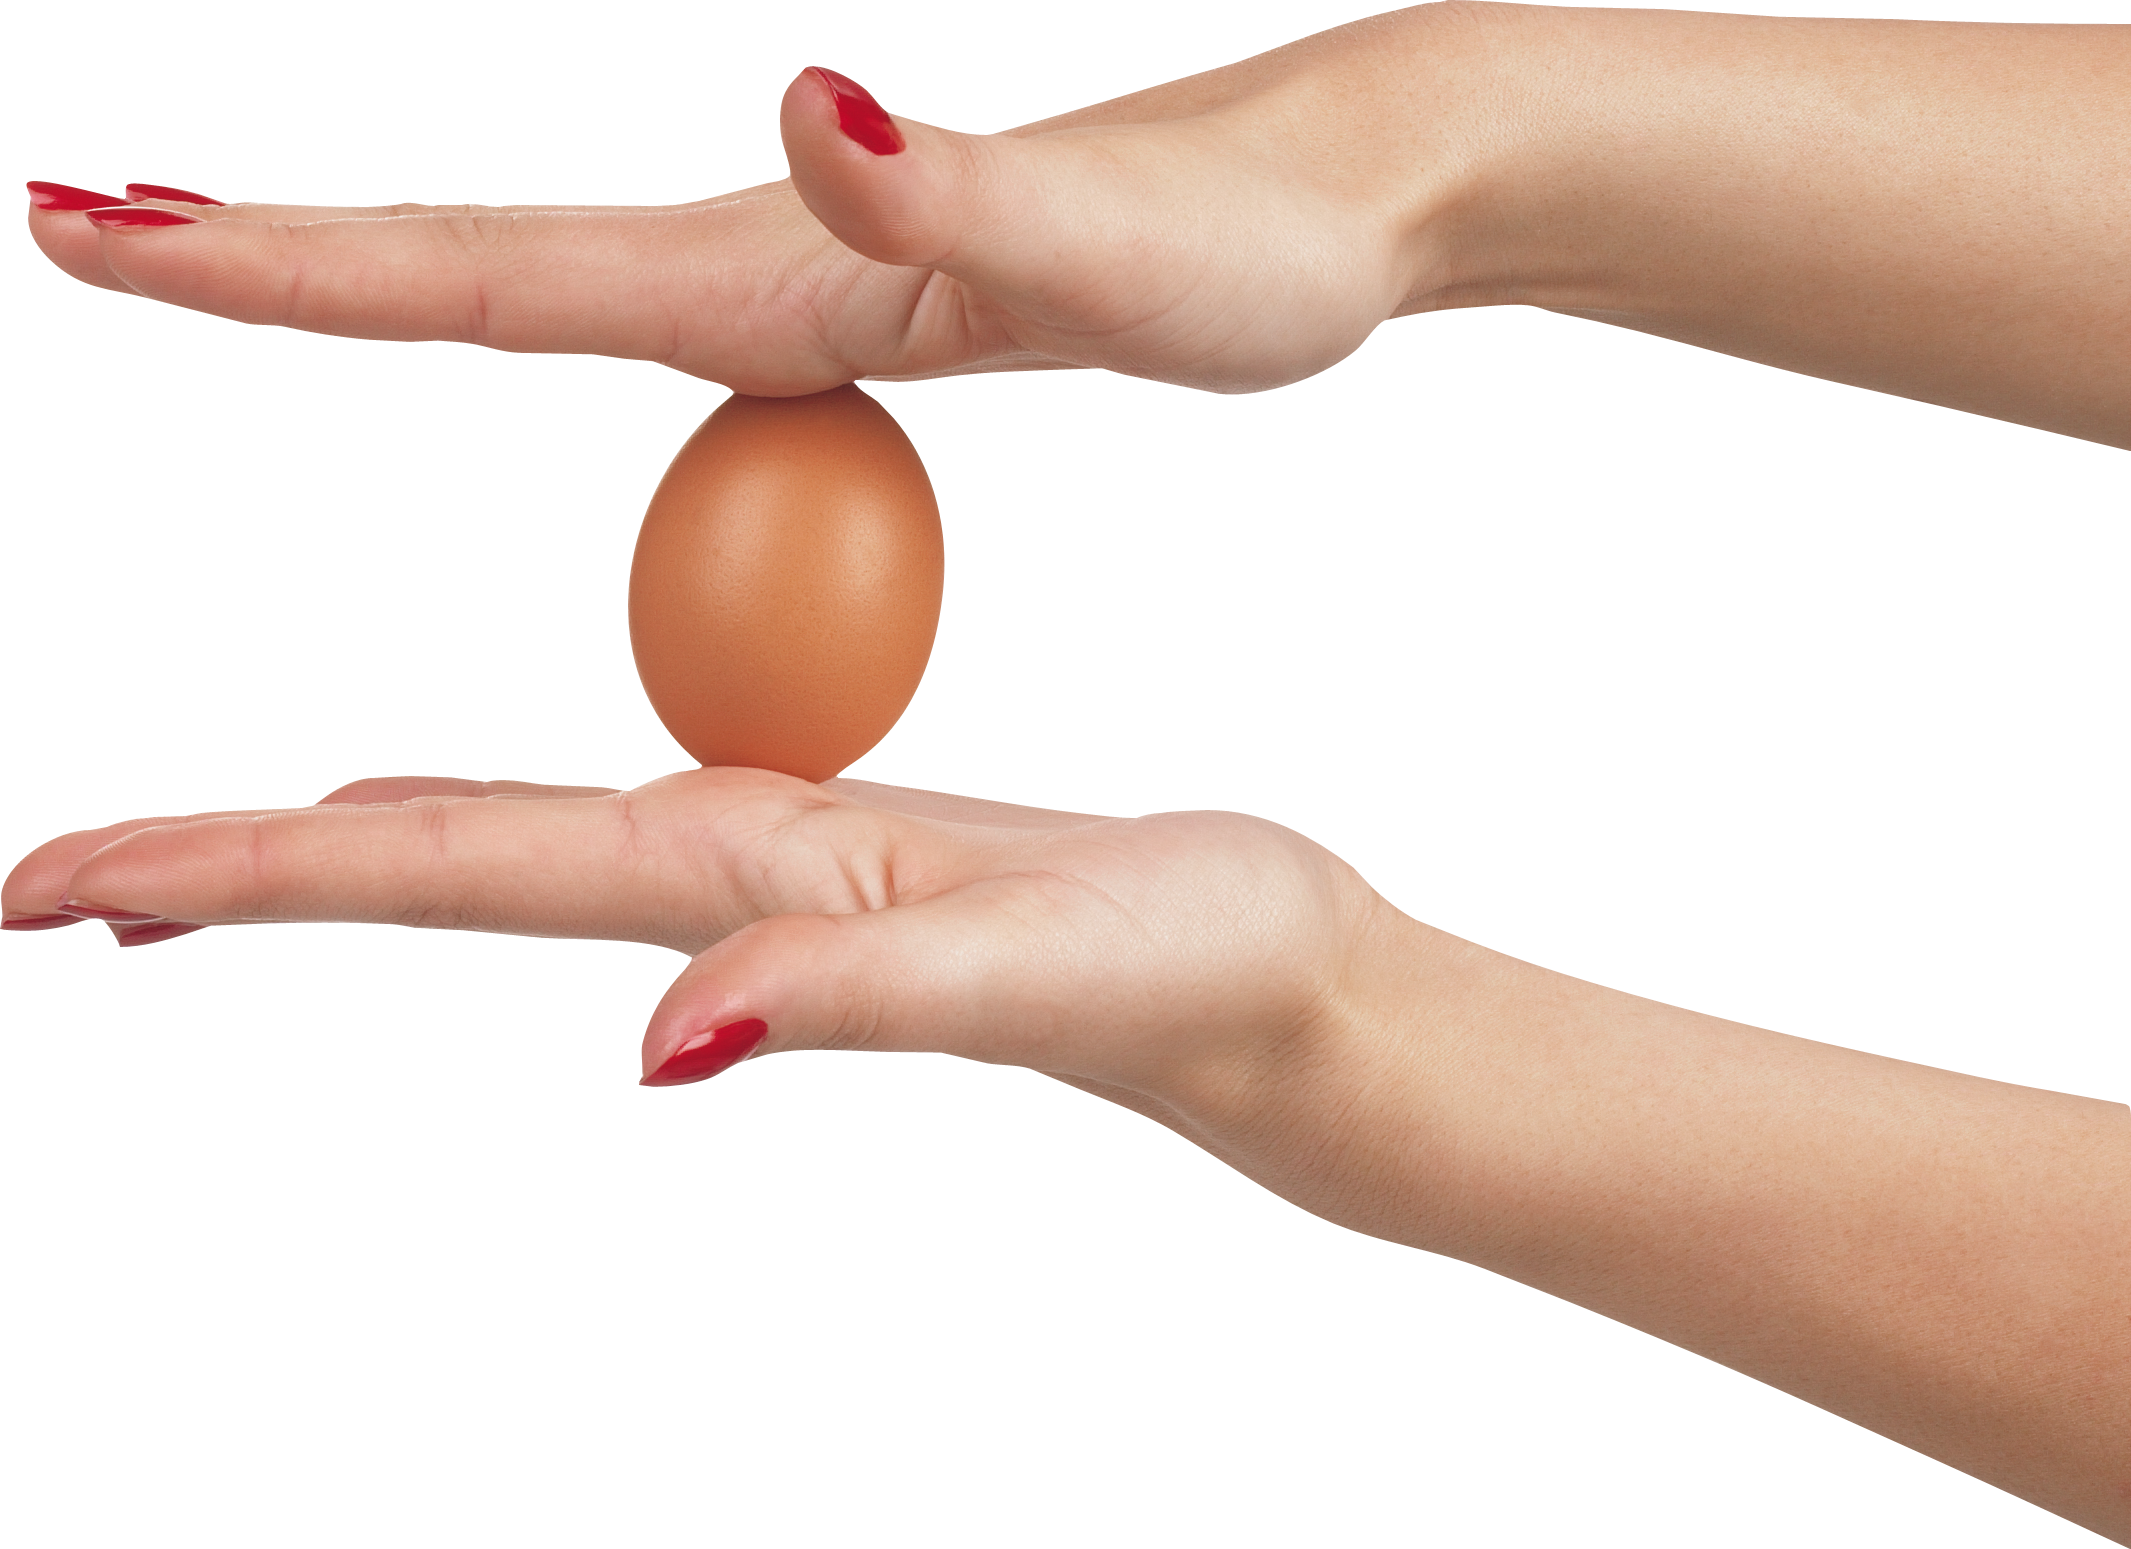 Eller arasında yumurta